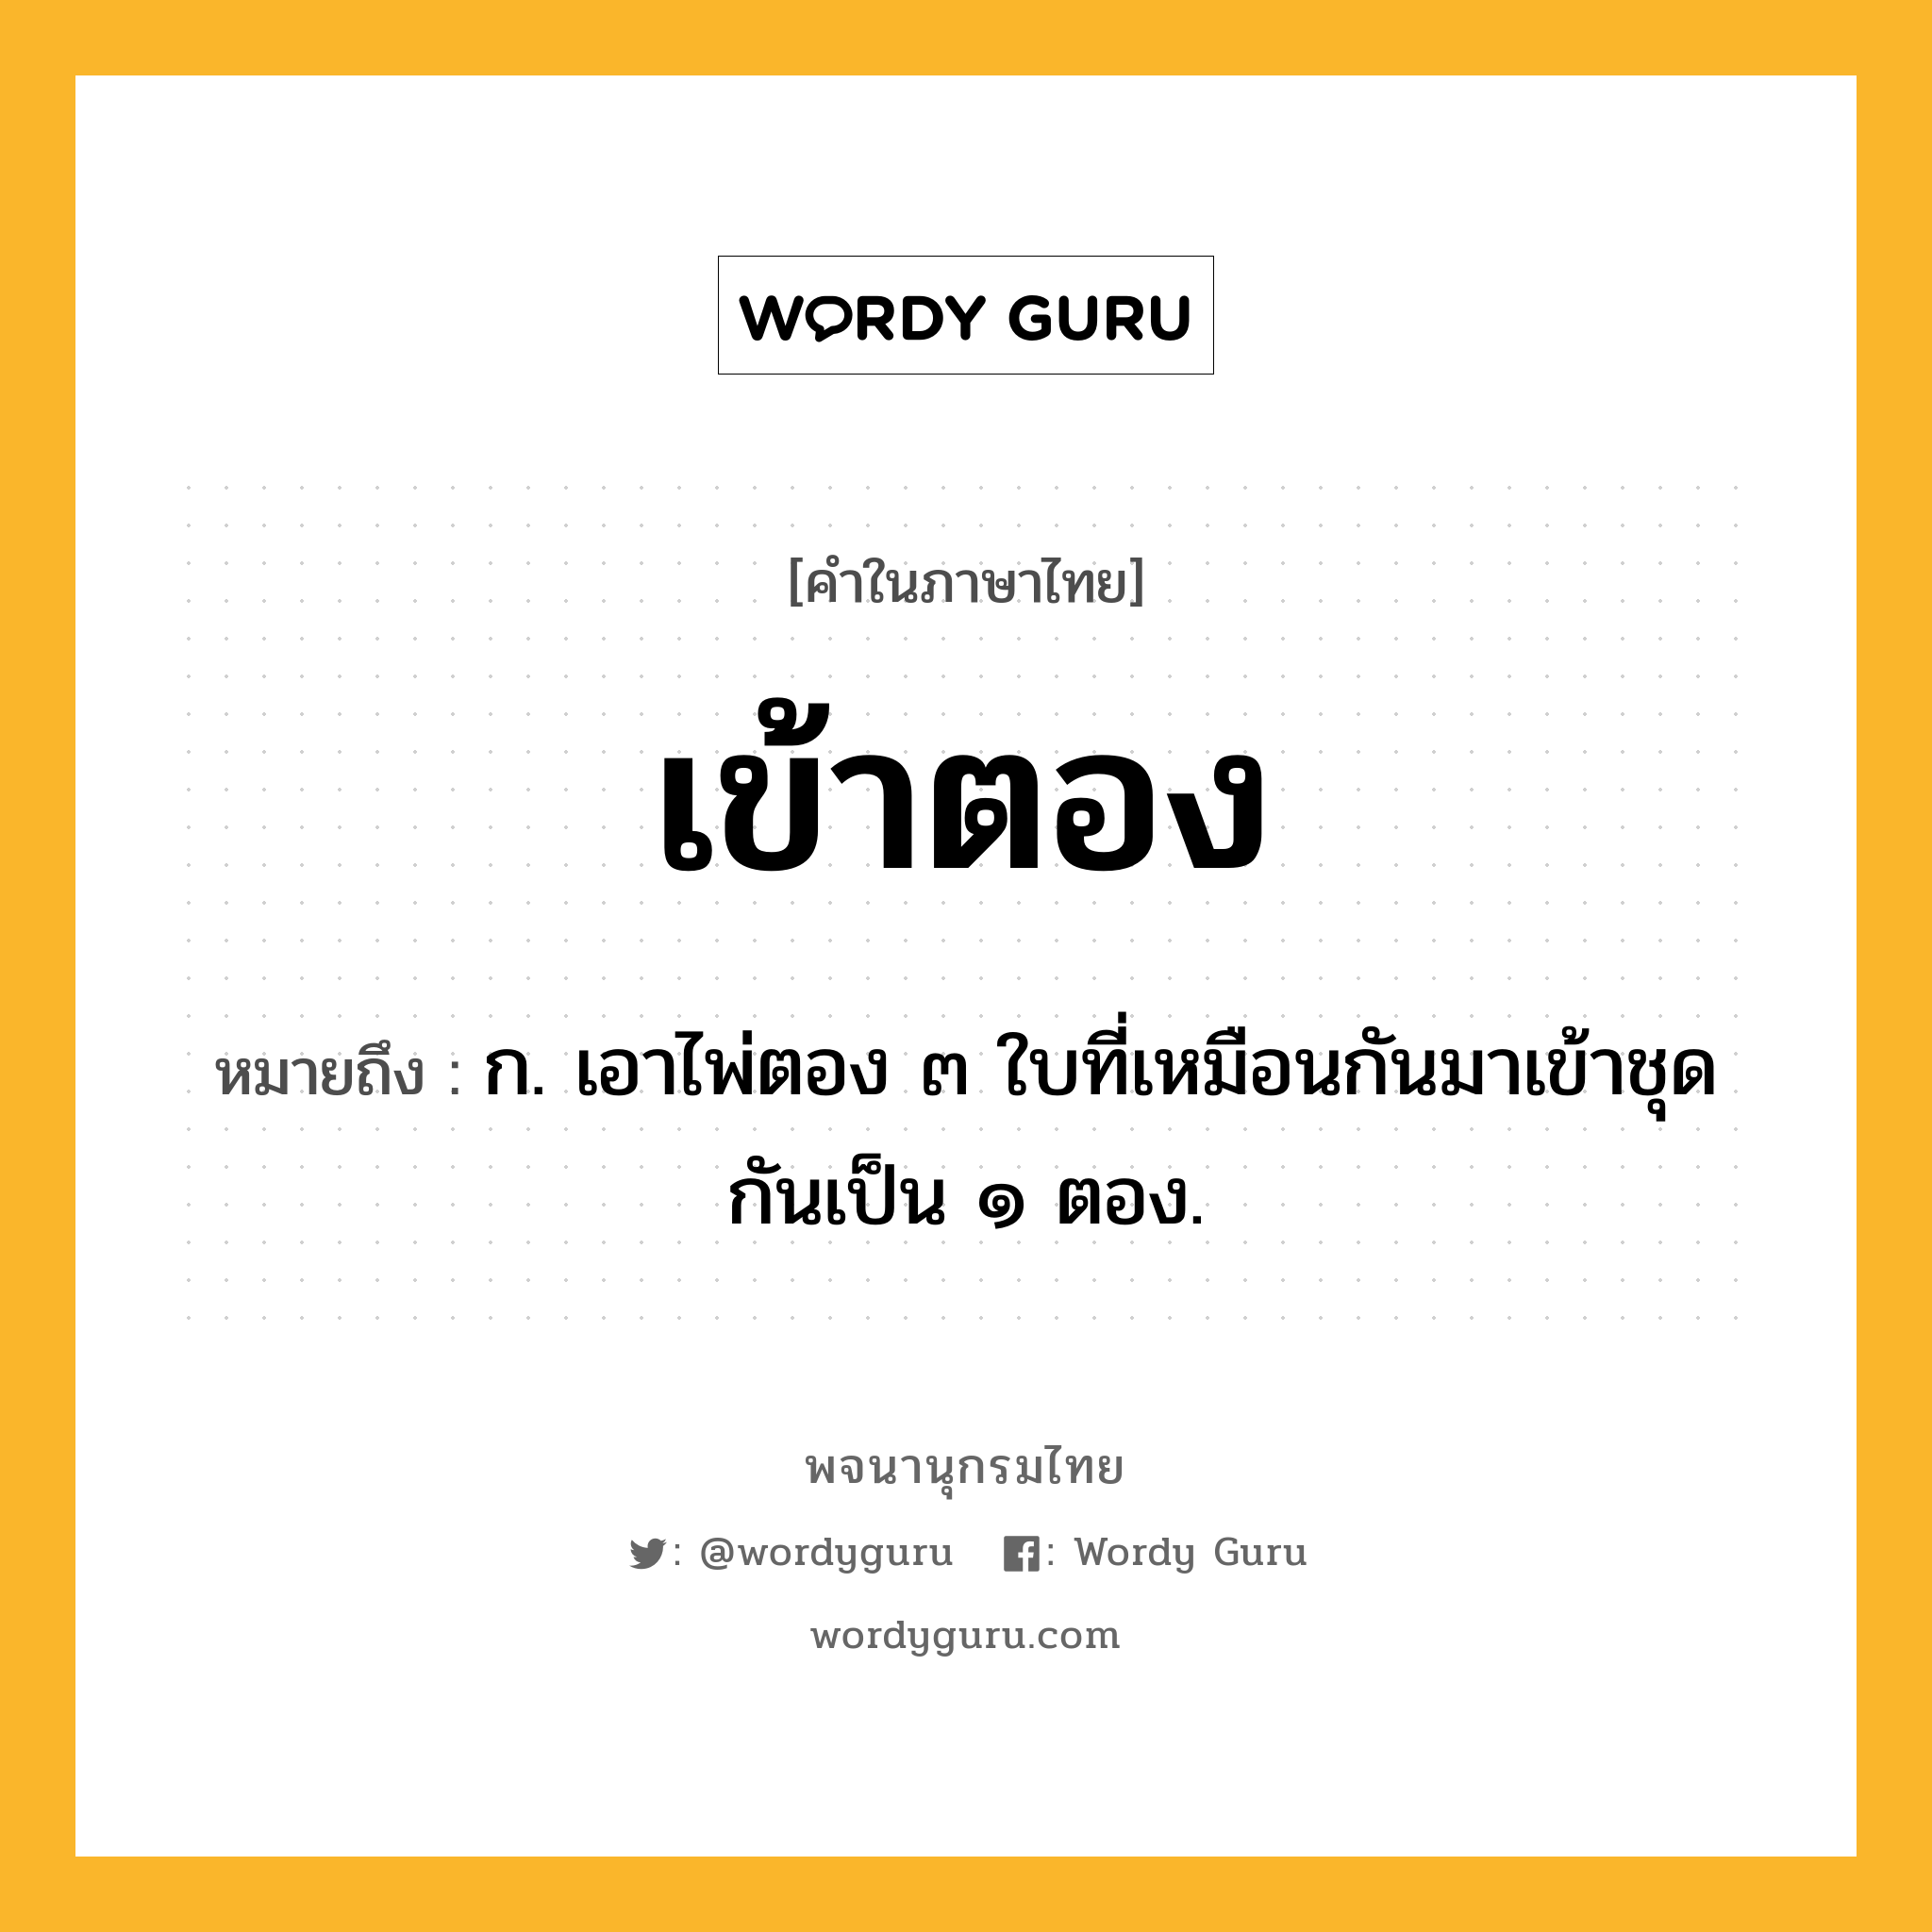 เข้าตอง ความหมาย หมายถึงอะไร?, คำในภาษาไทย เข้าตอง หมายถึง ก. เอาไพ่ตอง ๓ ใบที่เหมือนกันมาเข้าชุดกันเป็น ๑ ตอง.